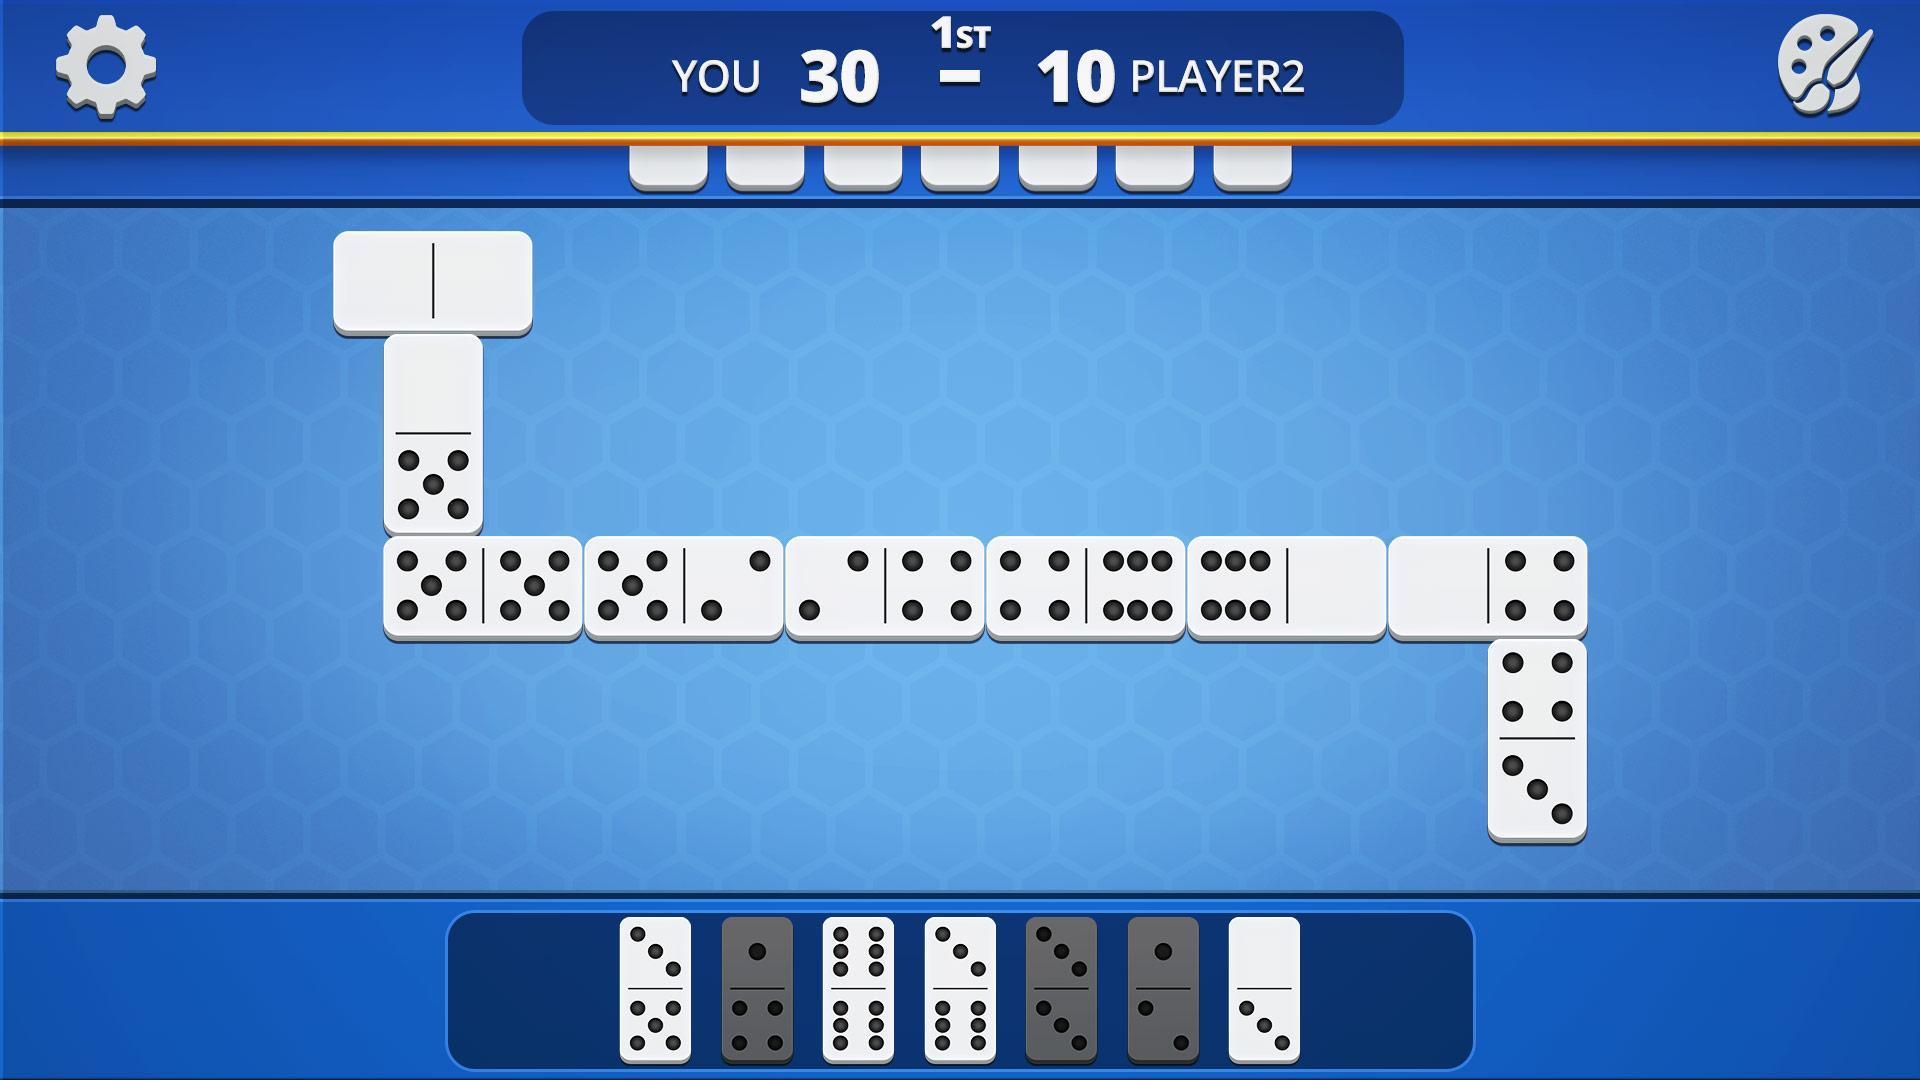 Dominoes Classic Domino Tile Based Game 1.2.5 Screenshot 14